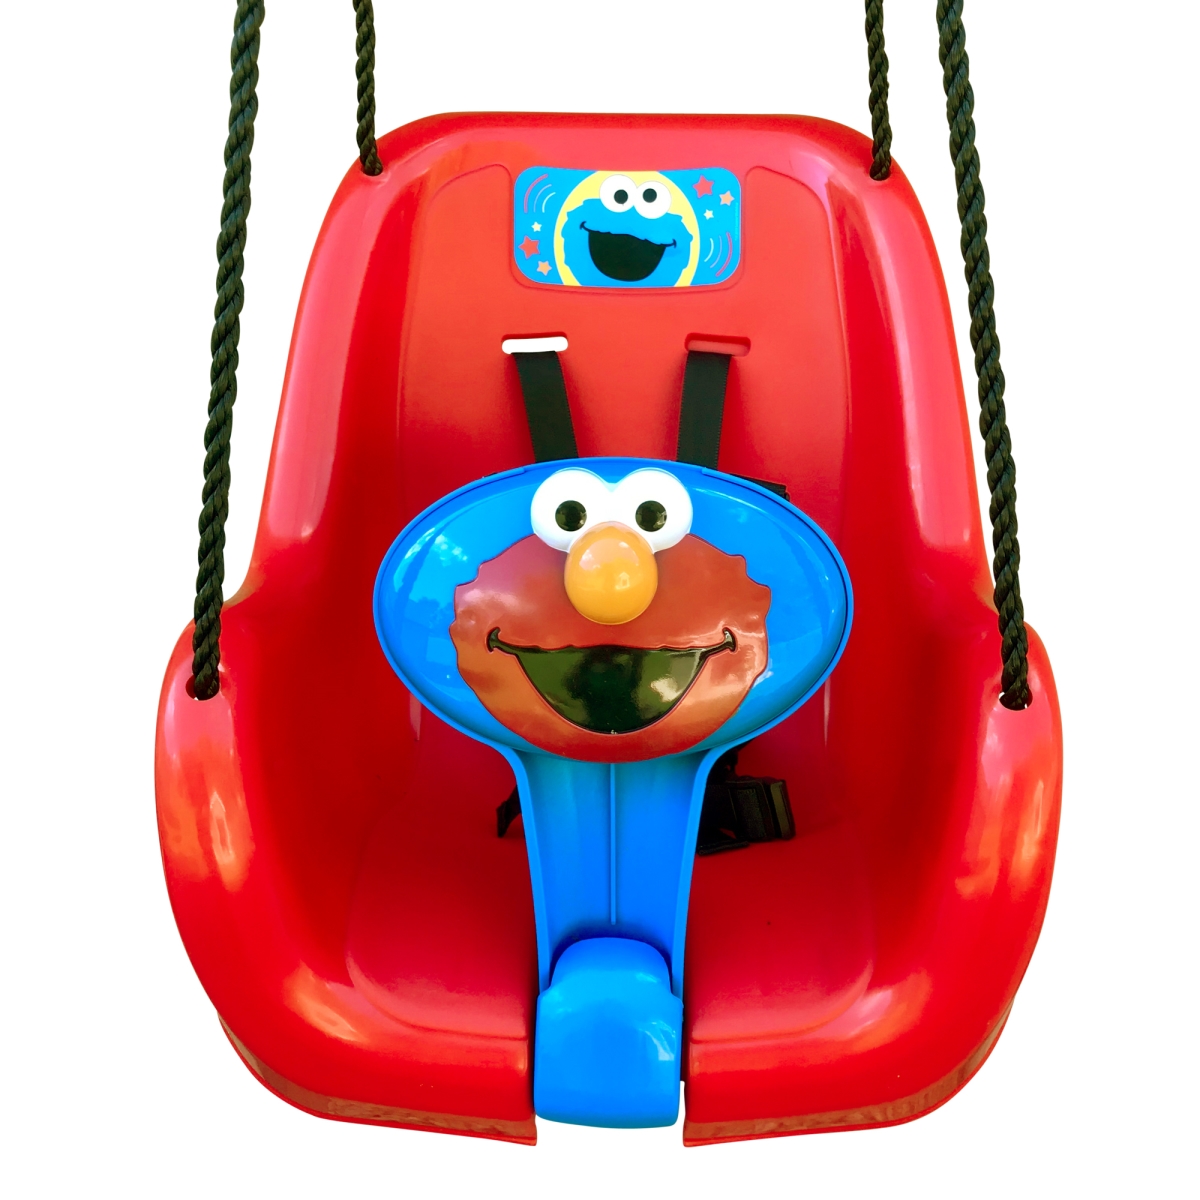 Mm00158 Sesame Street Elmo Toddler Swing